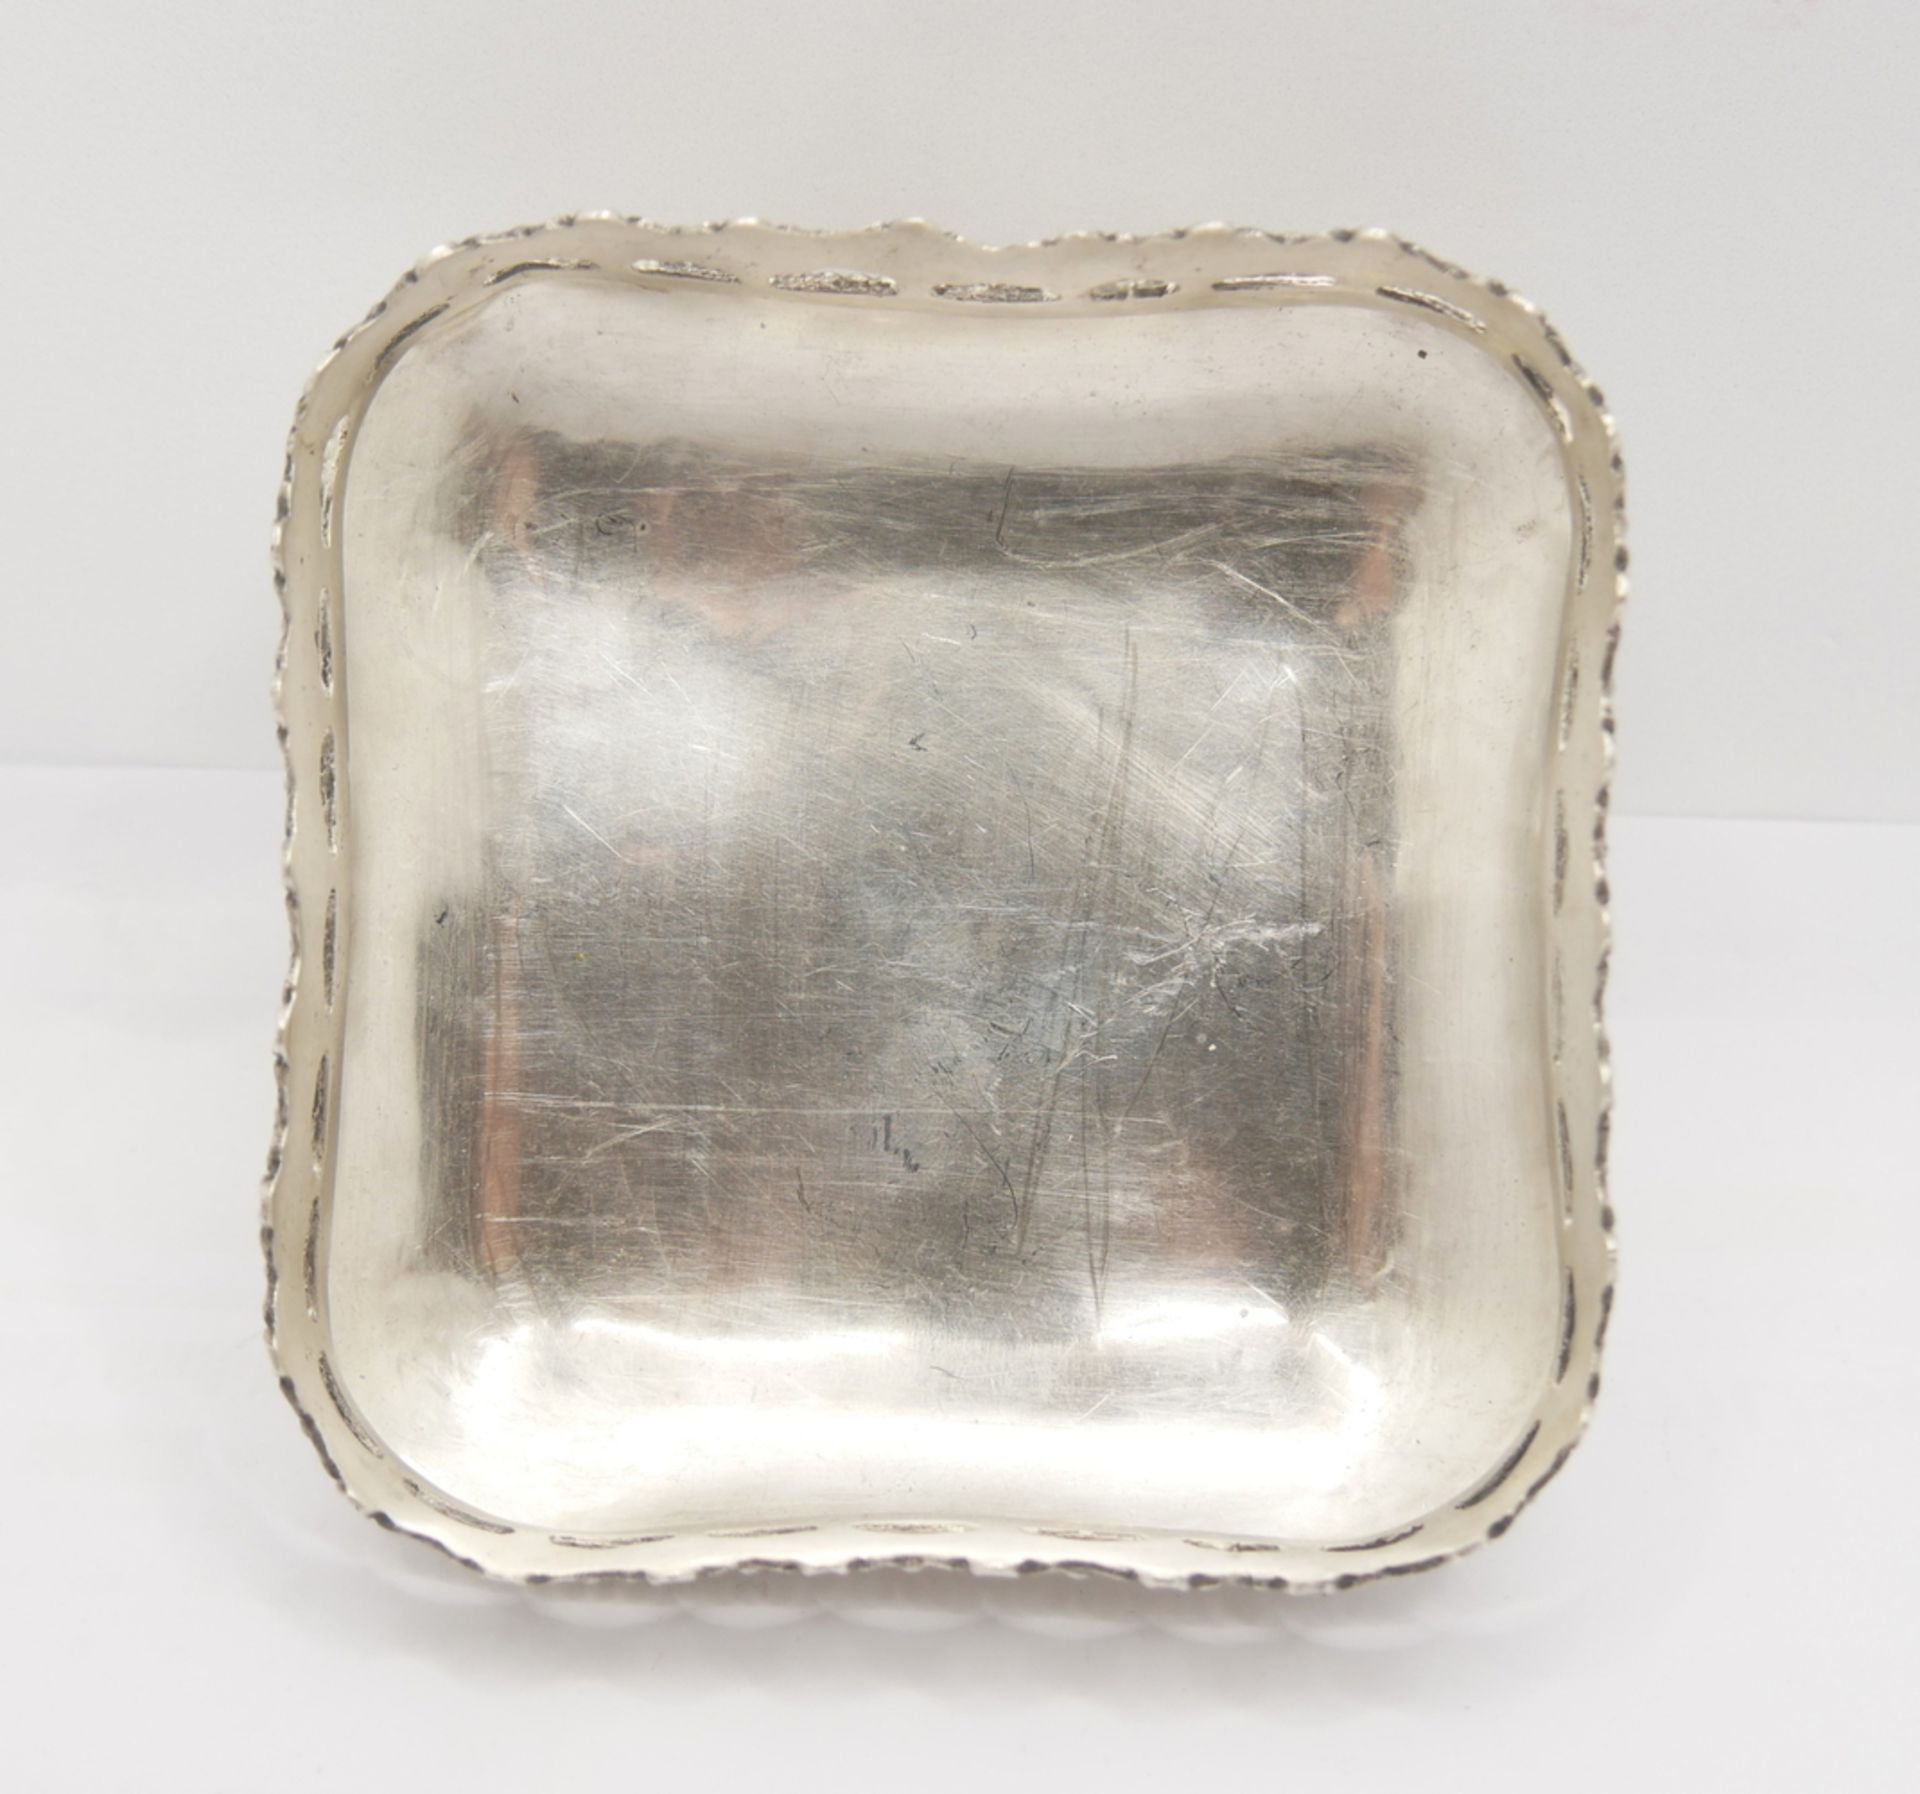 900er Silber Schälchen auf Füßen, gepunzt 900 & ES4. Höhe ca. 4,5 cm, Breite ca. 10 cm - Image 3 of 4